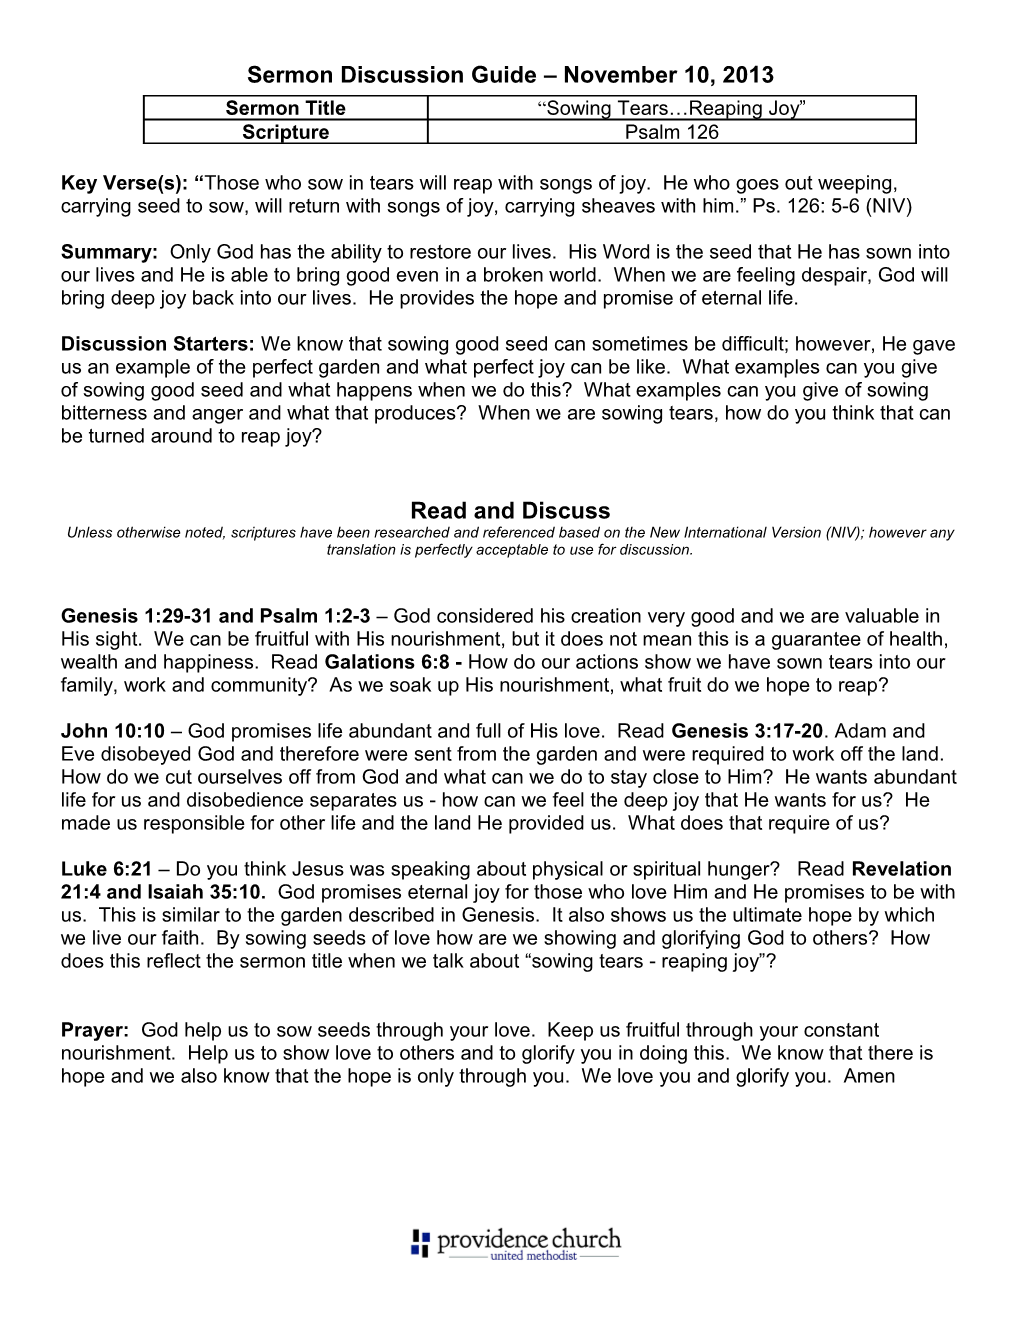 Sermon Discussion Guide November 10, 2013